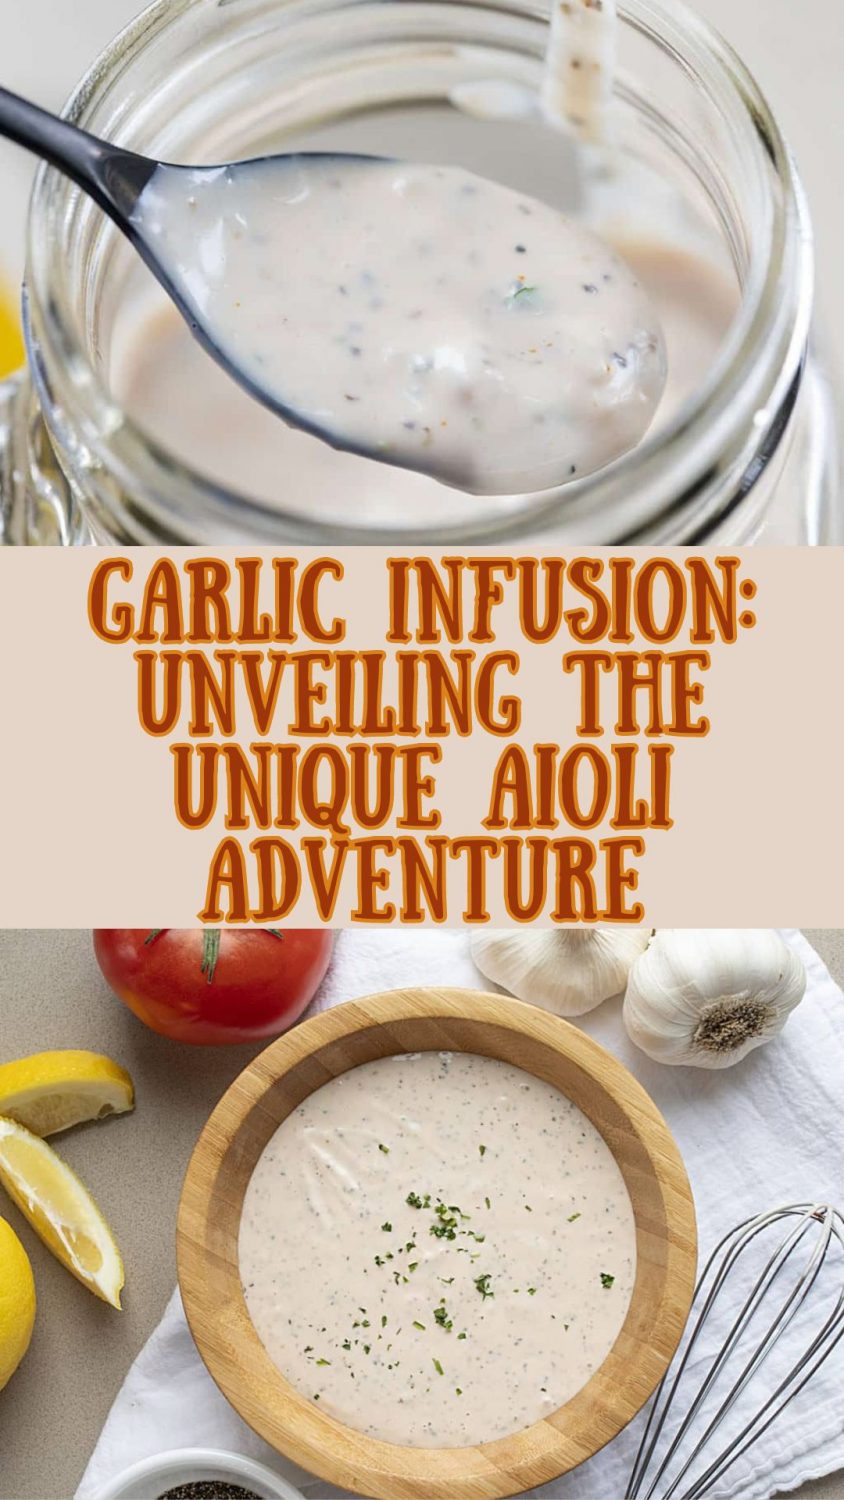 Garlic Infusion: Unveiling the Unique Aioli Adventure